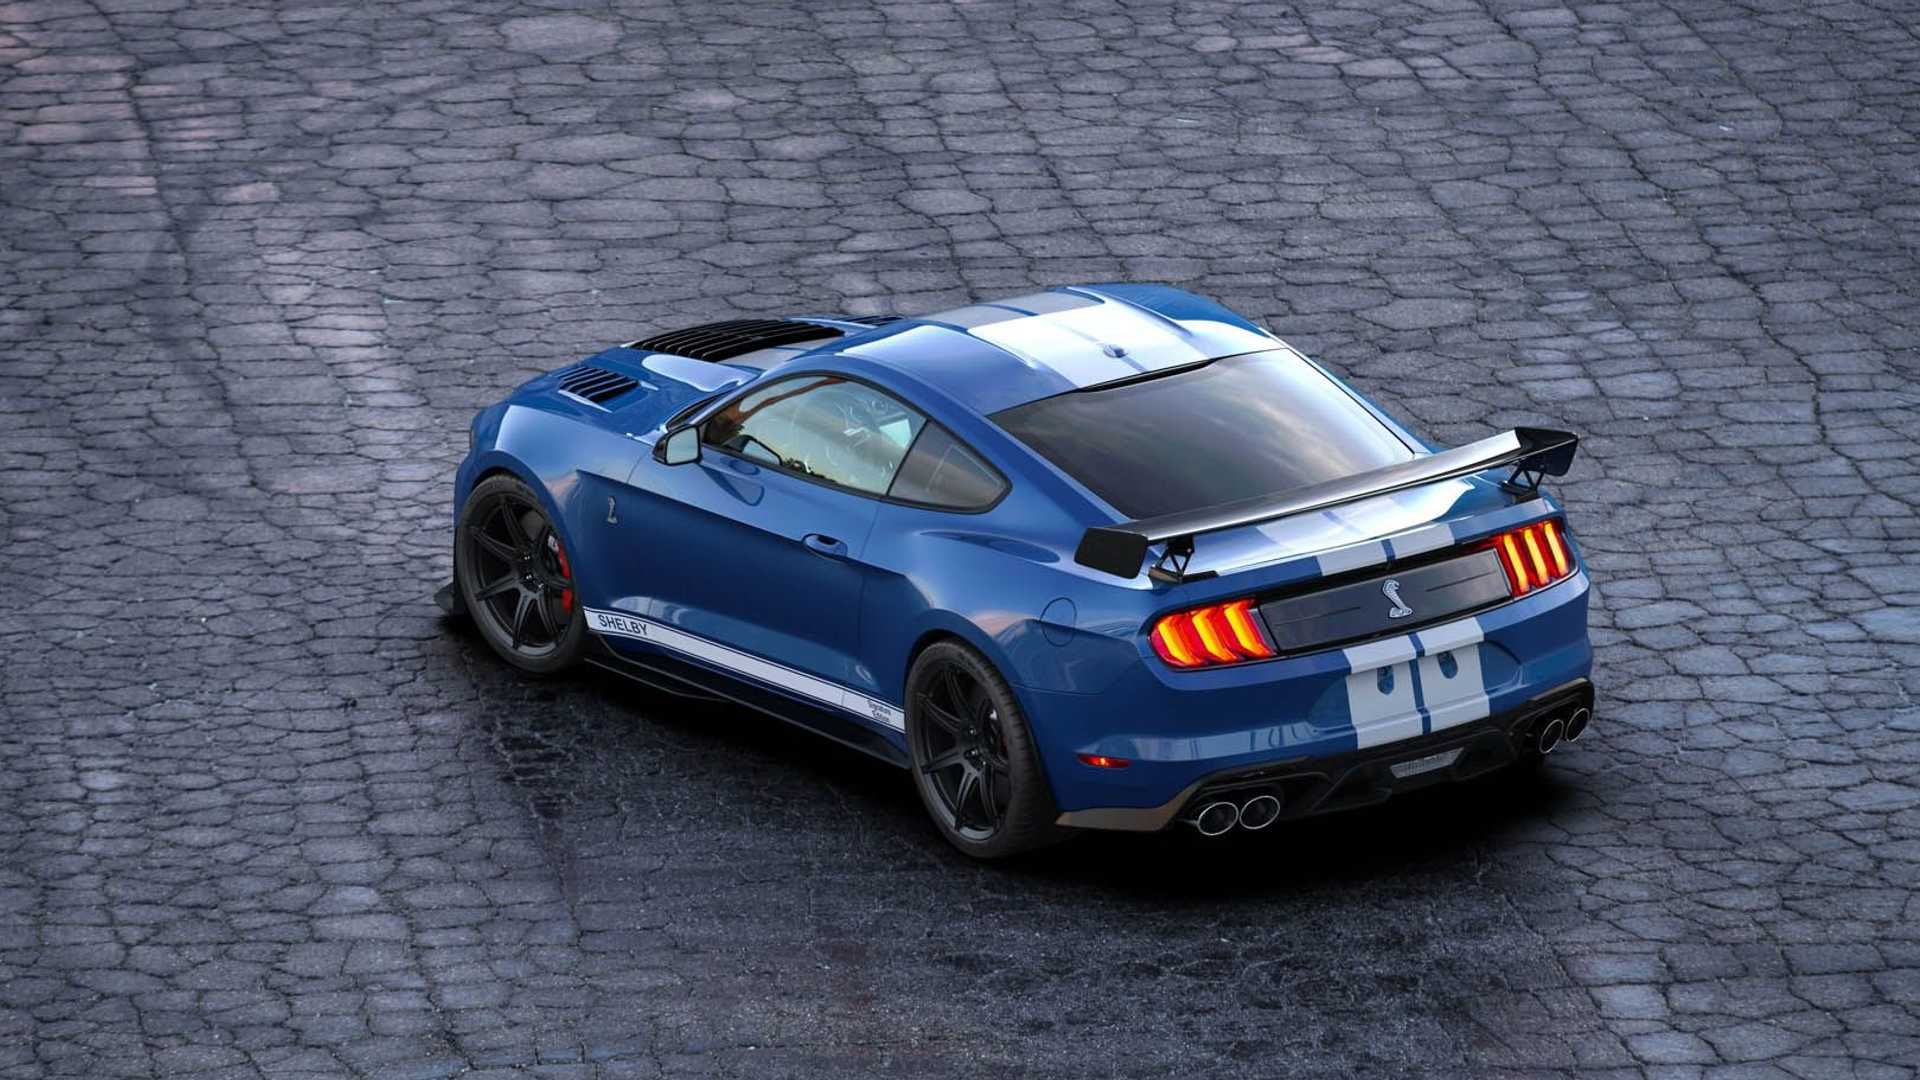 نمای عقب خودرو فورد موستانگ شلبی / Ford Mustang آبی رنگ در خیابان سنگ فرش 